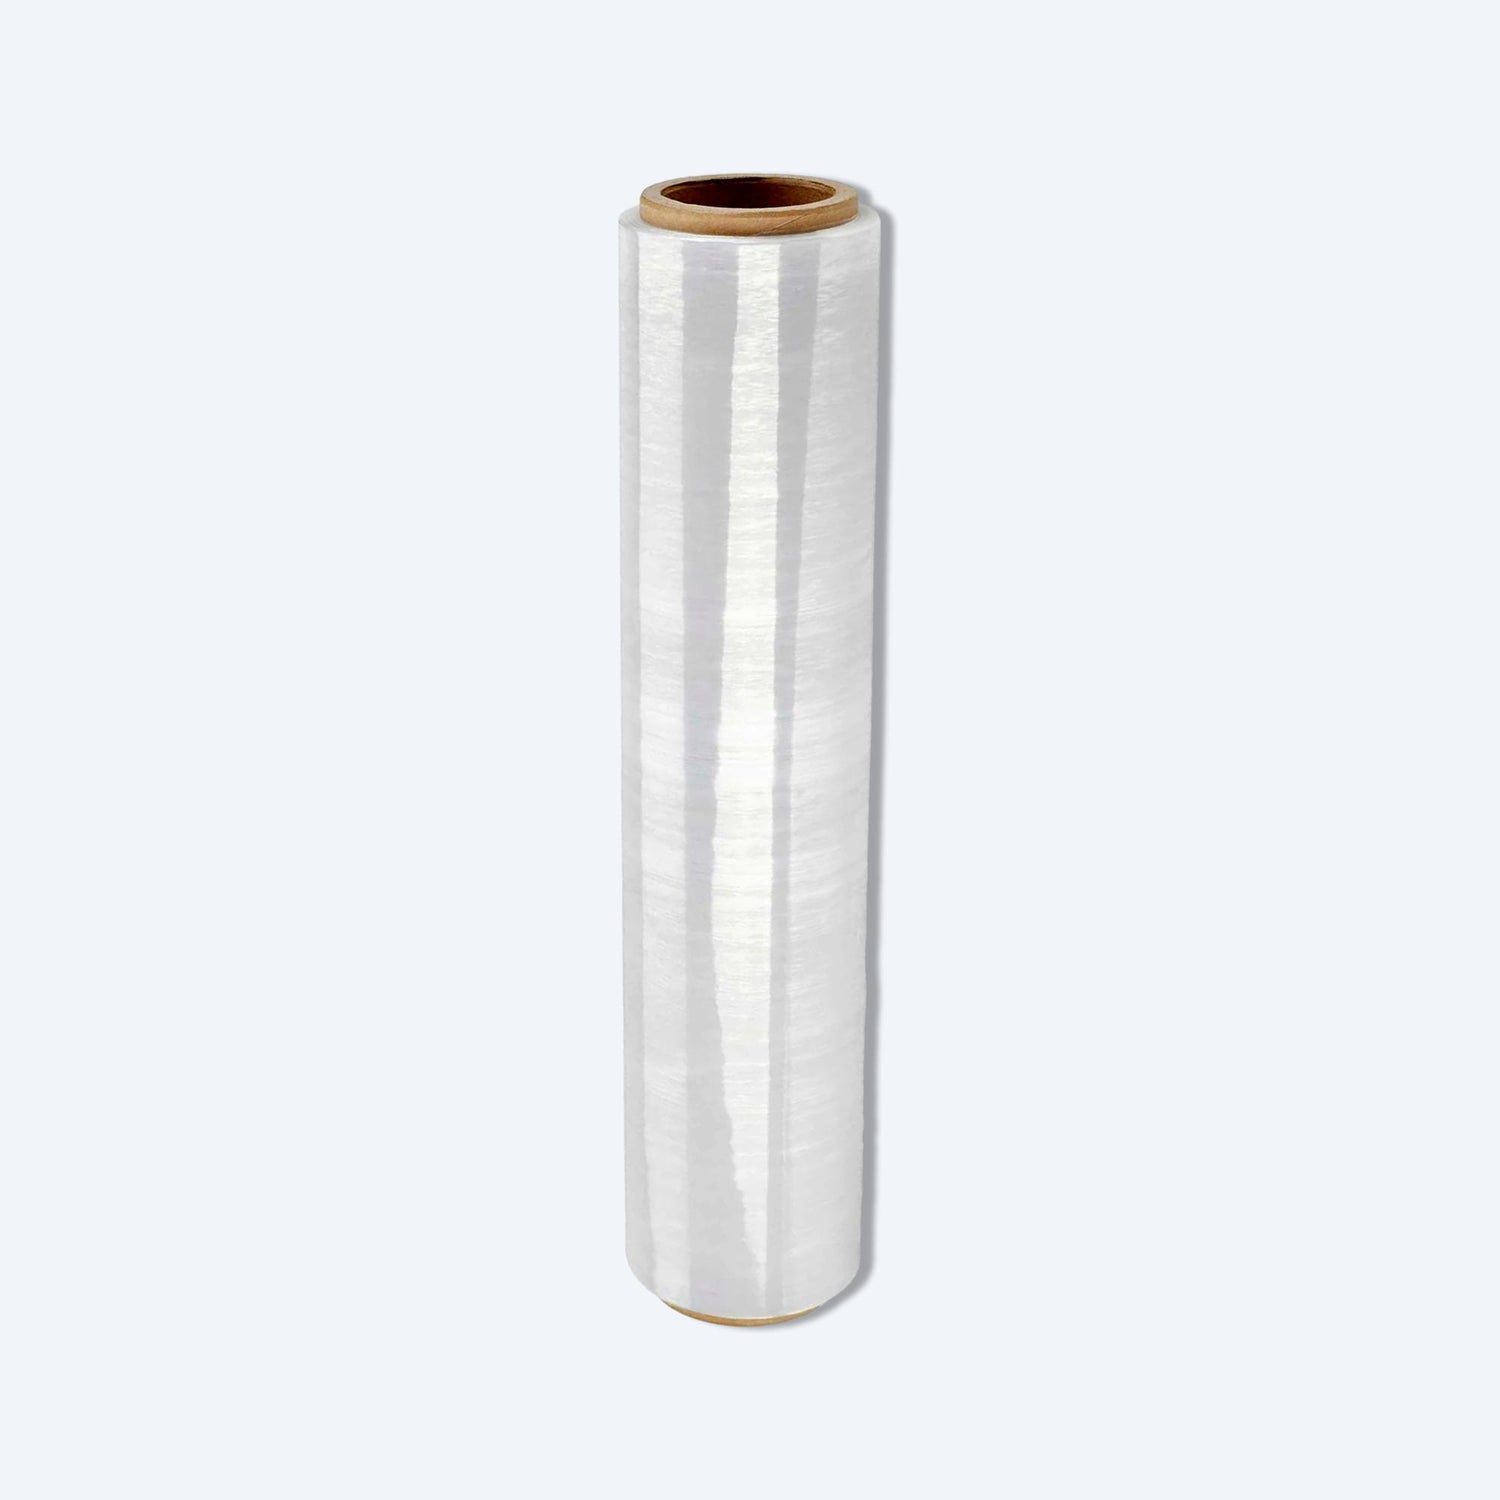 Stretch Wrap透明拉伸綑膜，用於捆綁和包裝物品，是一種包裝物料，放置於灰藍色背景上。